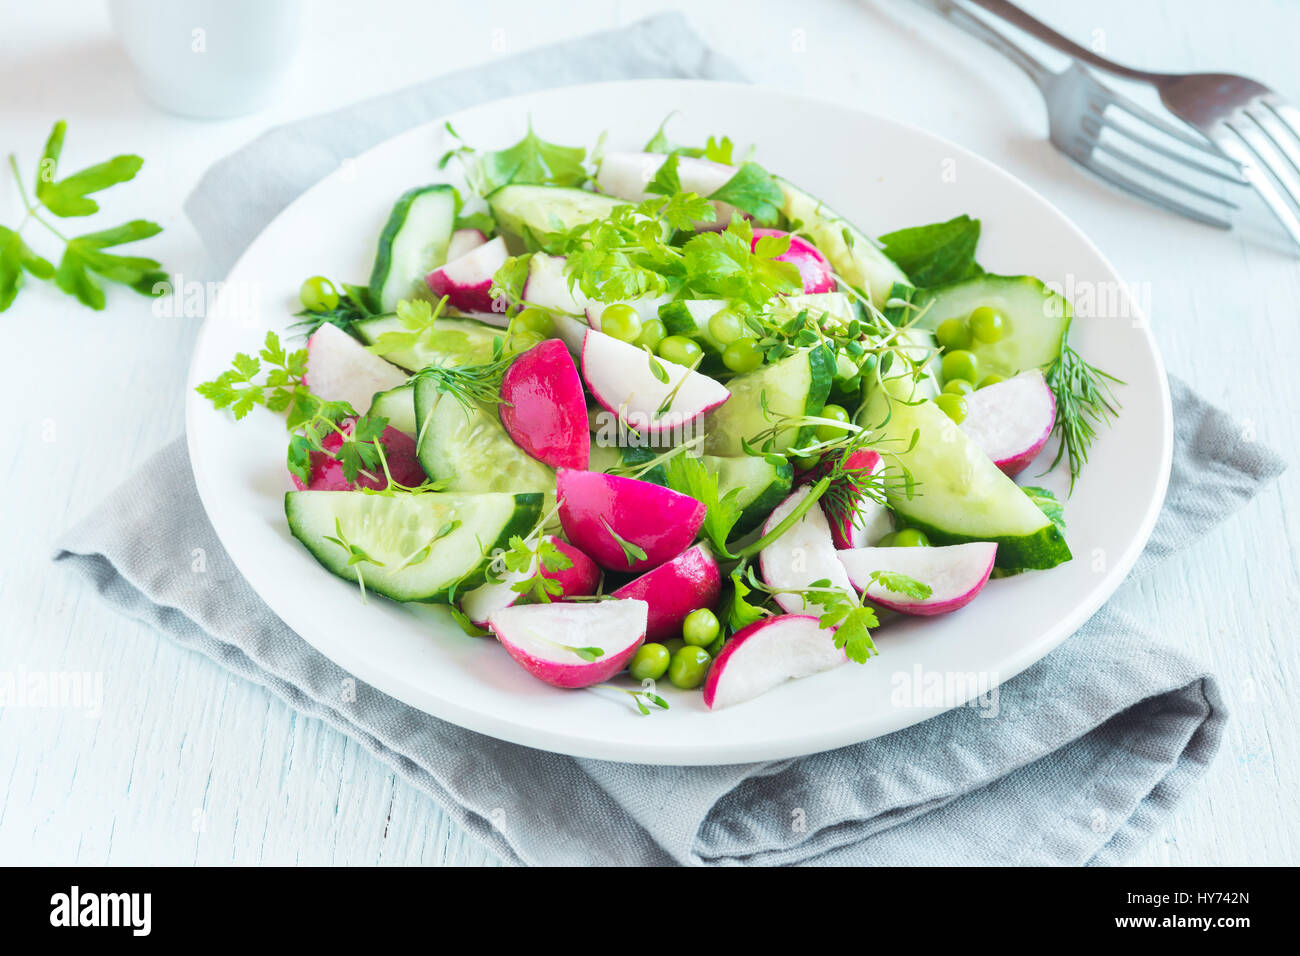 Gesundes Gemüse Frühlingssalat mit Rettich, Gurken, grüne Erbsen und Rosenkohl, Diät, vegetarisch, Vegan, Bio, grün Essen, Frühling Entgiftung Snack. Stockfoto